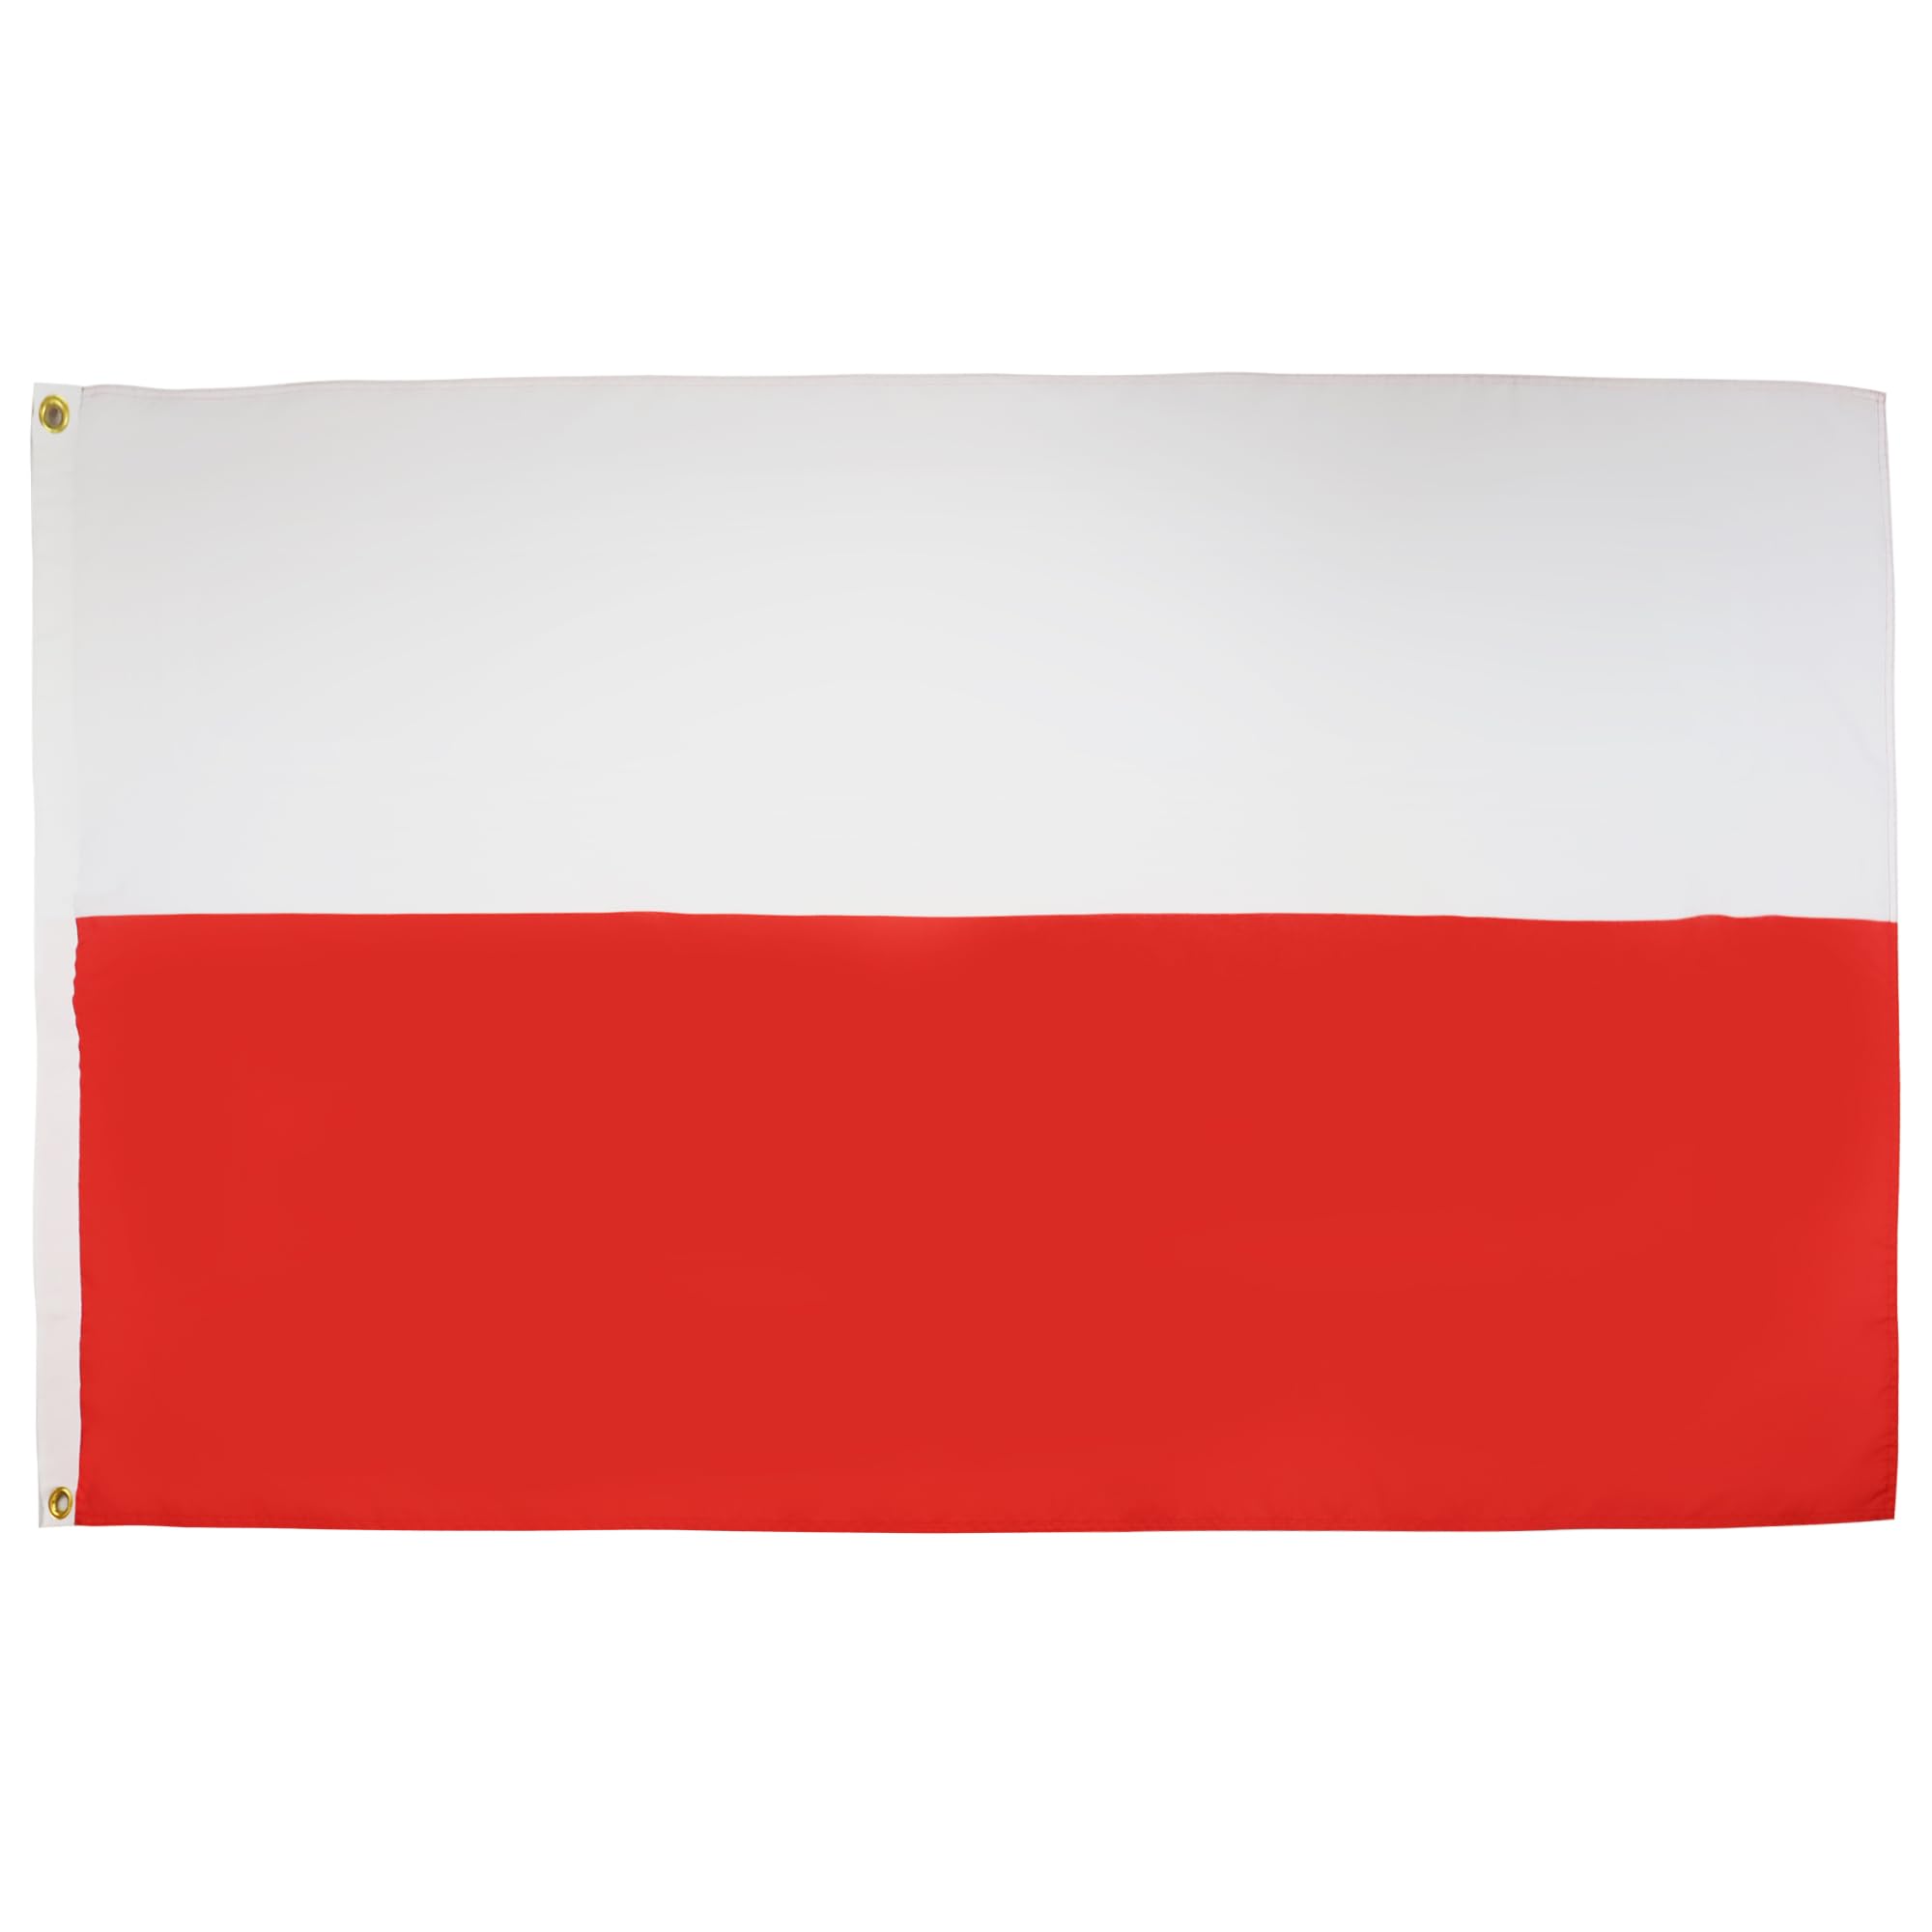 AZ FLAG Flagge Polen 250x150cm - POLNISCHE Fahne 150 x 250 cm - flaggen Top Qualität